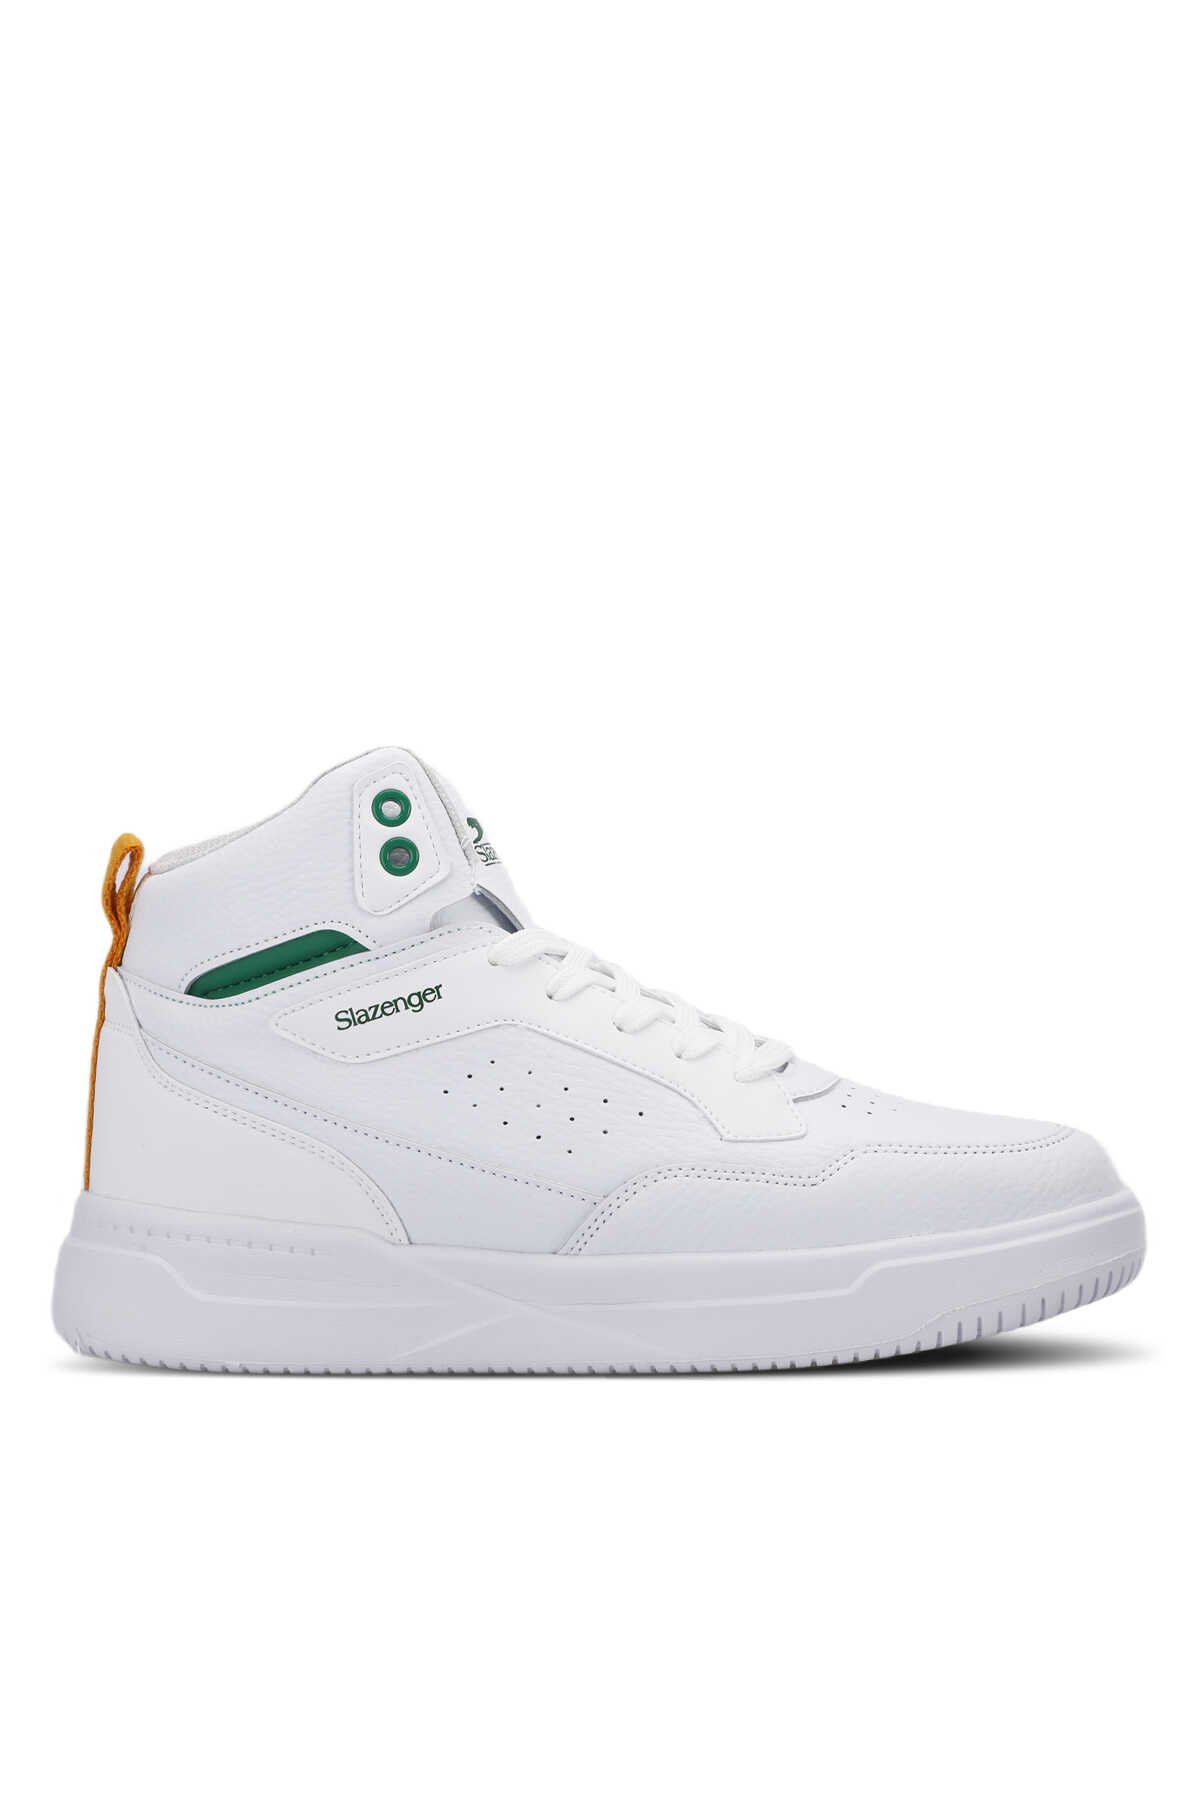 Slazenger - Slazenger LALI Sneaker Erkek Ayakkabı Beyaz / Yeşil